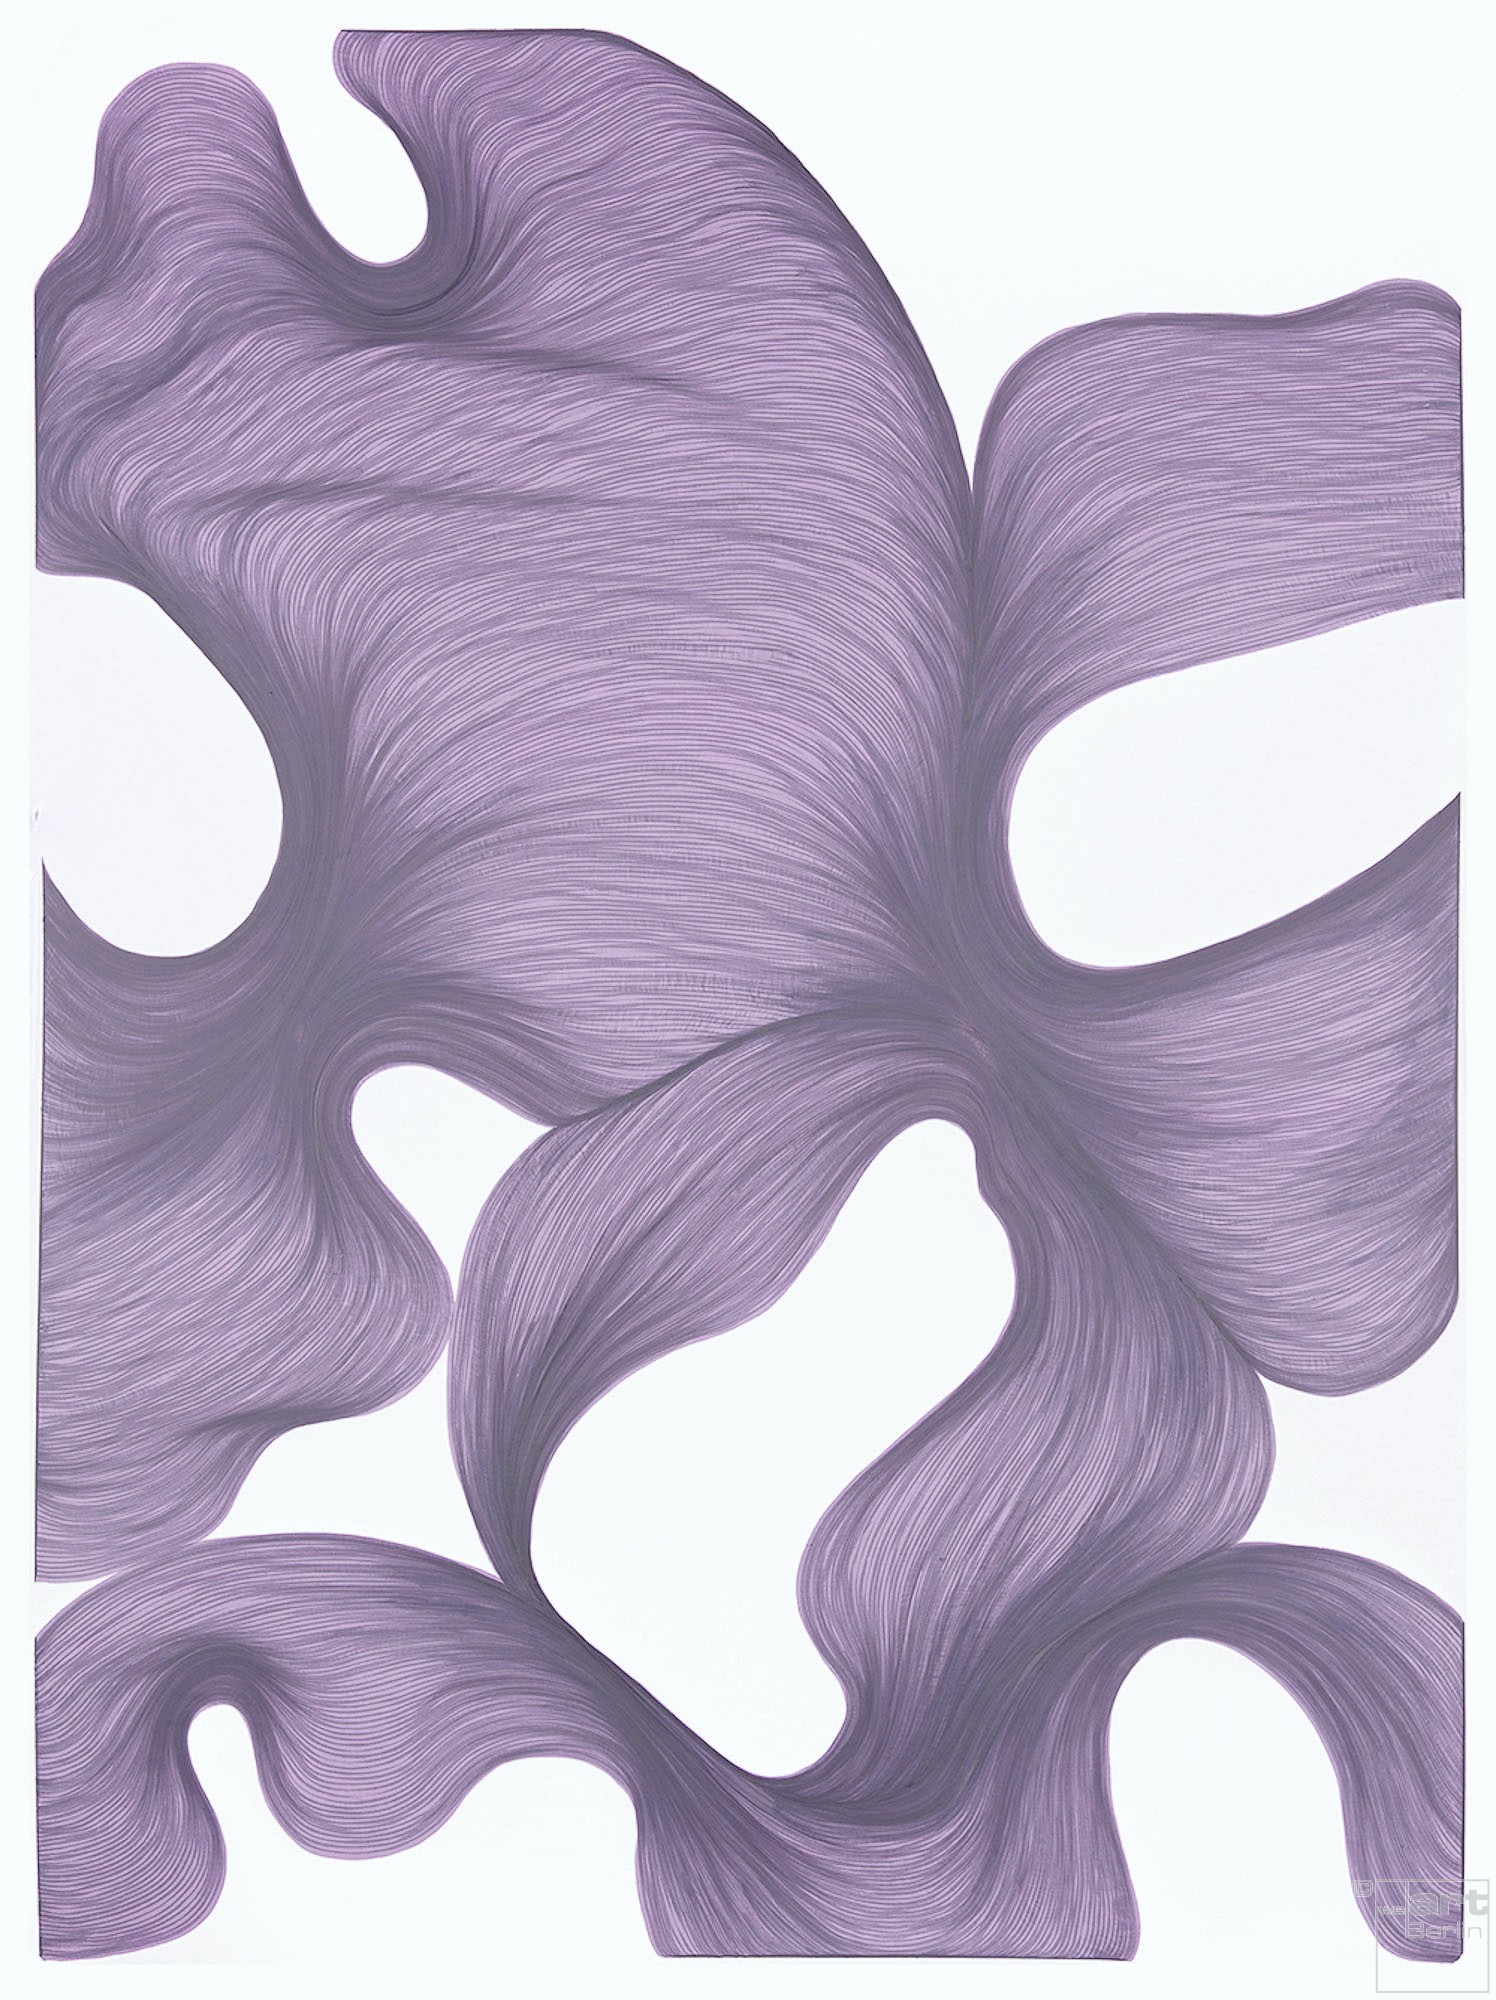 Smokey Lavender Escape | Lali Torma | Zeichnung | Kalligraphie Tinte auf Papier